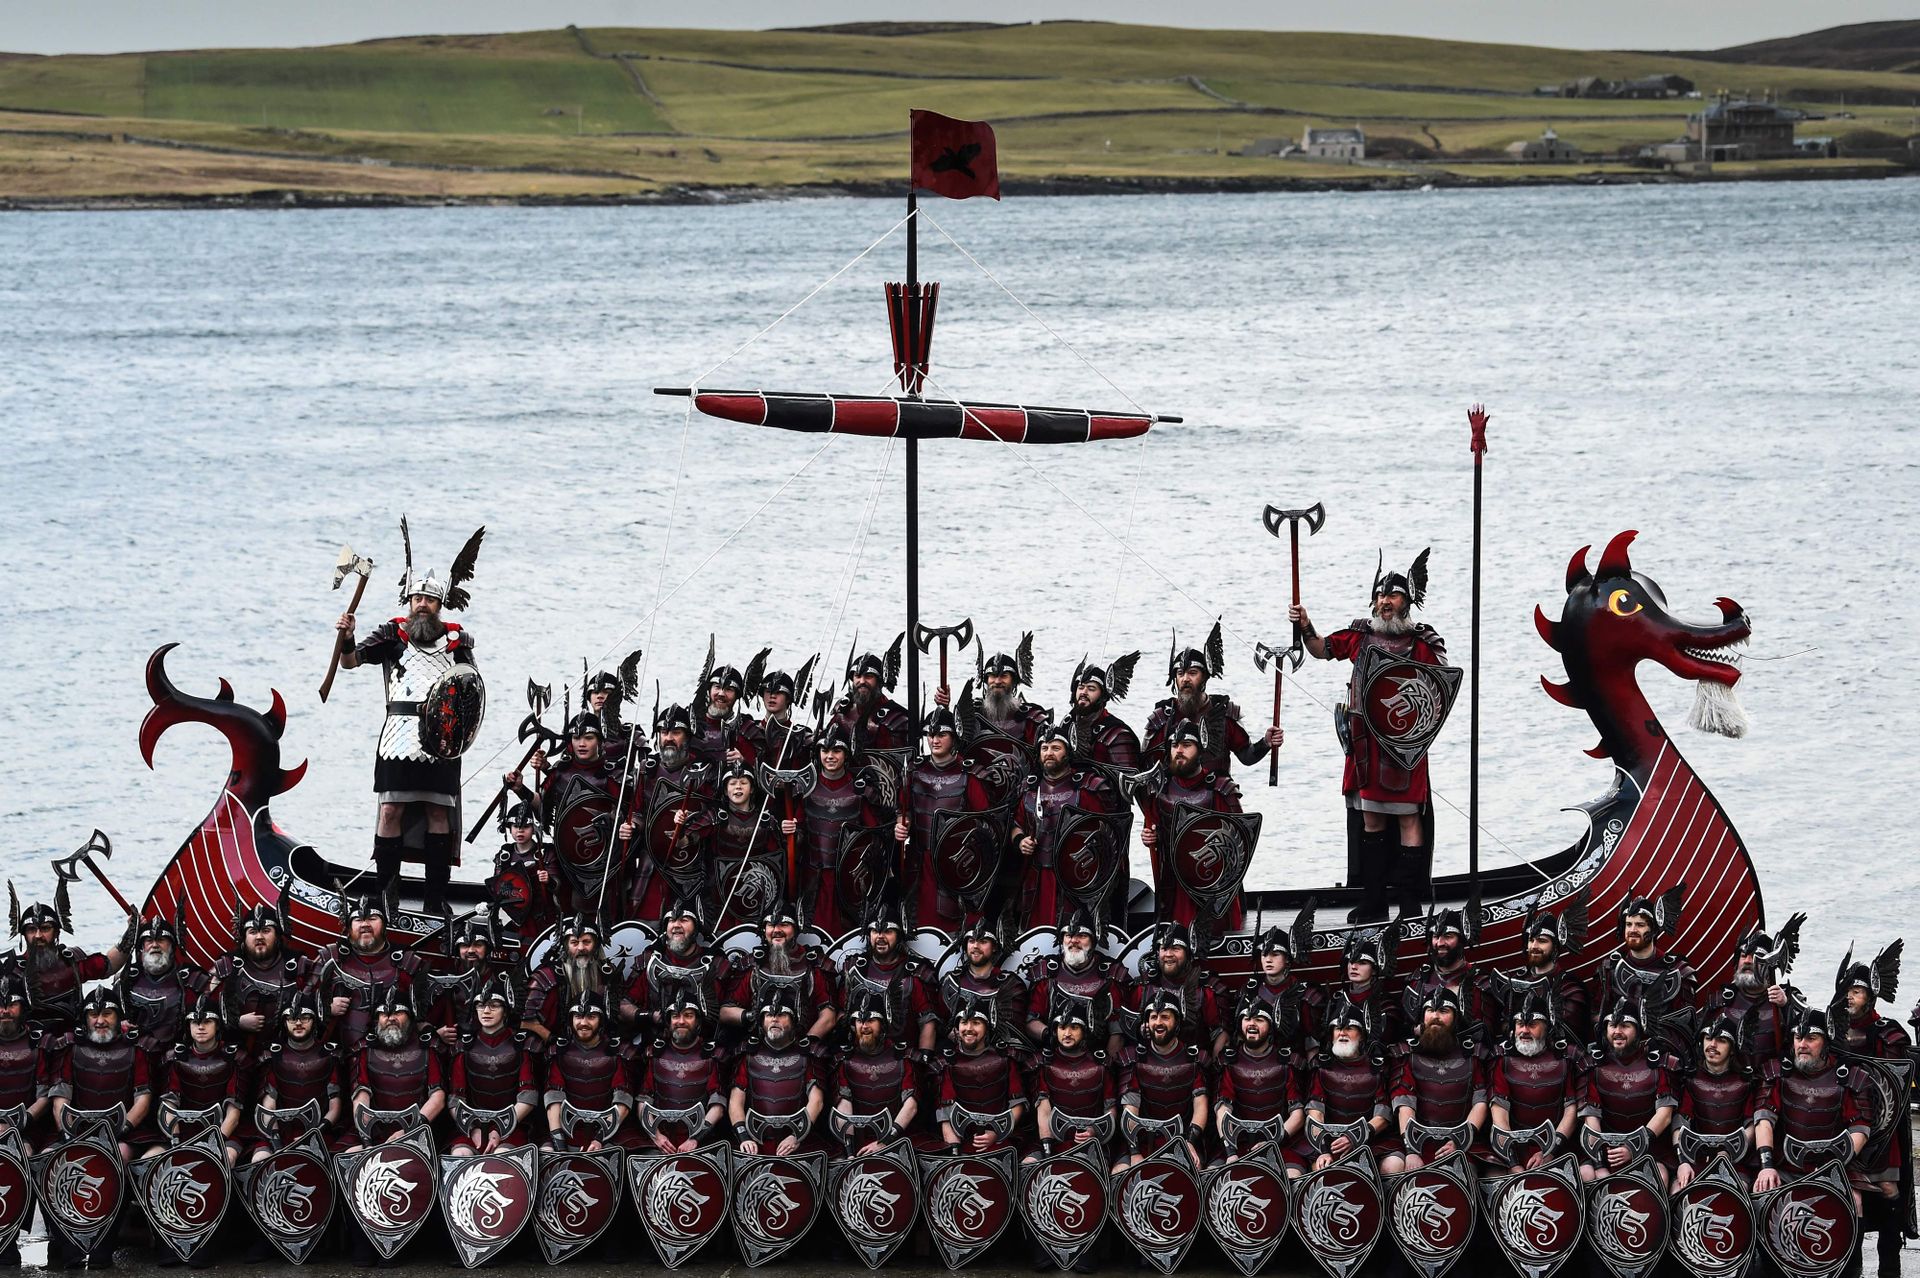 Over hundre menn og gutter i vikingkostymer med hjelmer og skjold står og poserer foran og oppi et rødt viking-langskip. 